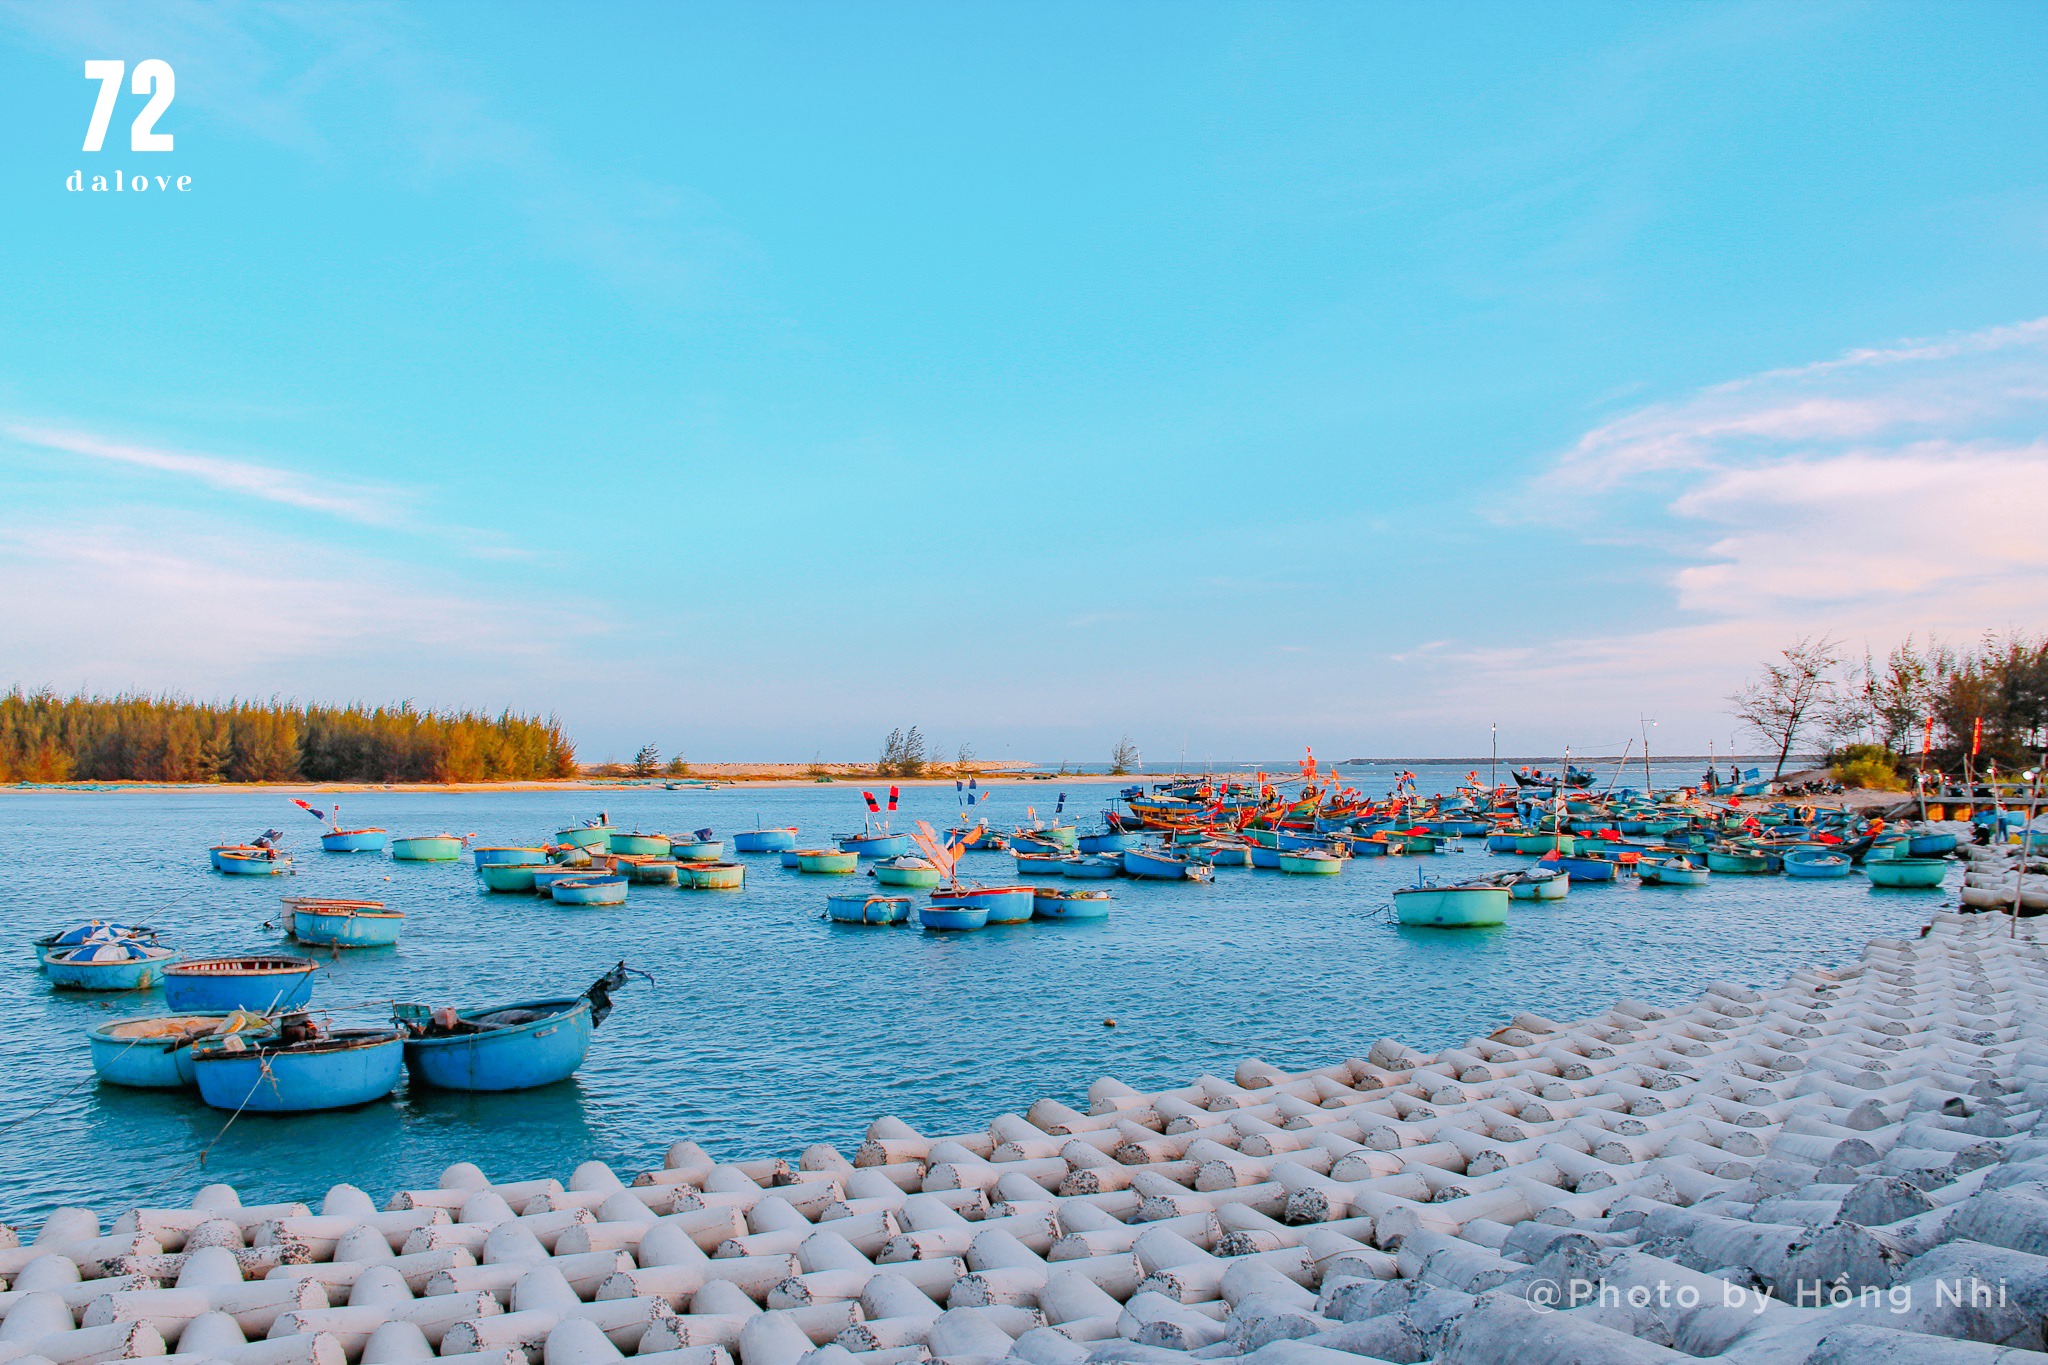 Biển Lộc An